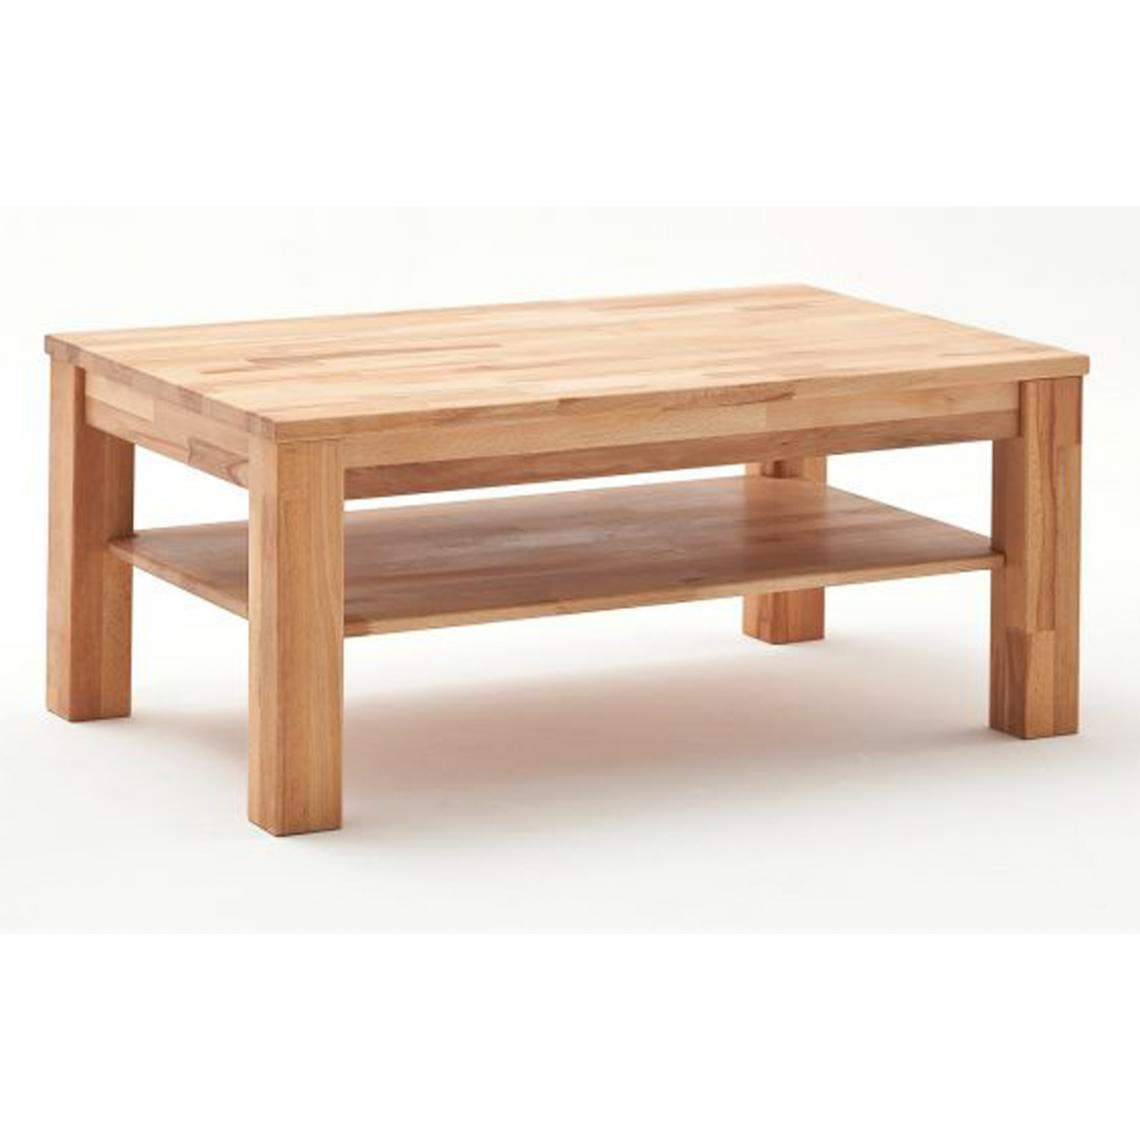 Pegane - Table basse en coeur de hêtre et chêne noueux, huilé - L.105 x H.45 x P.65 cm - Tables basses